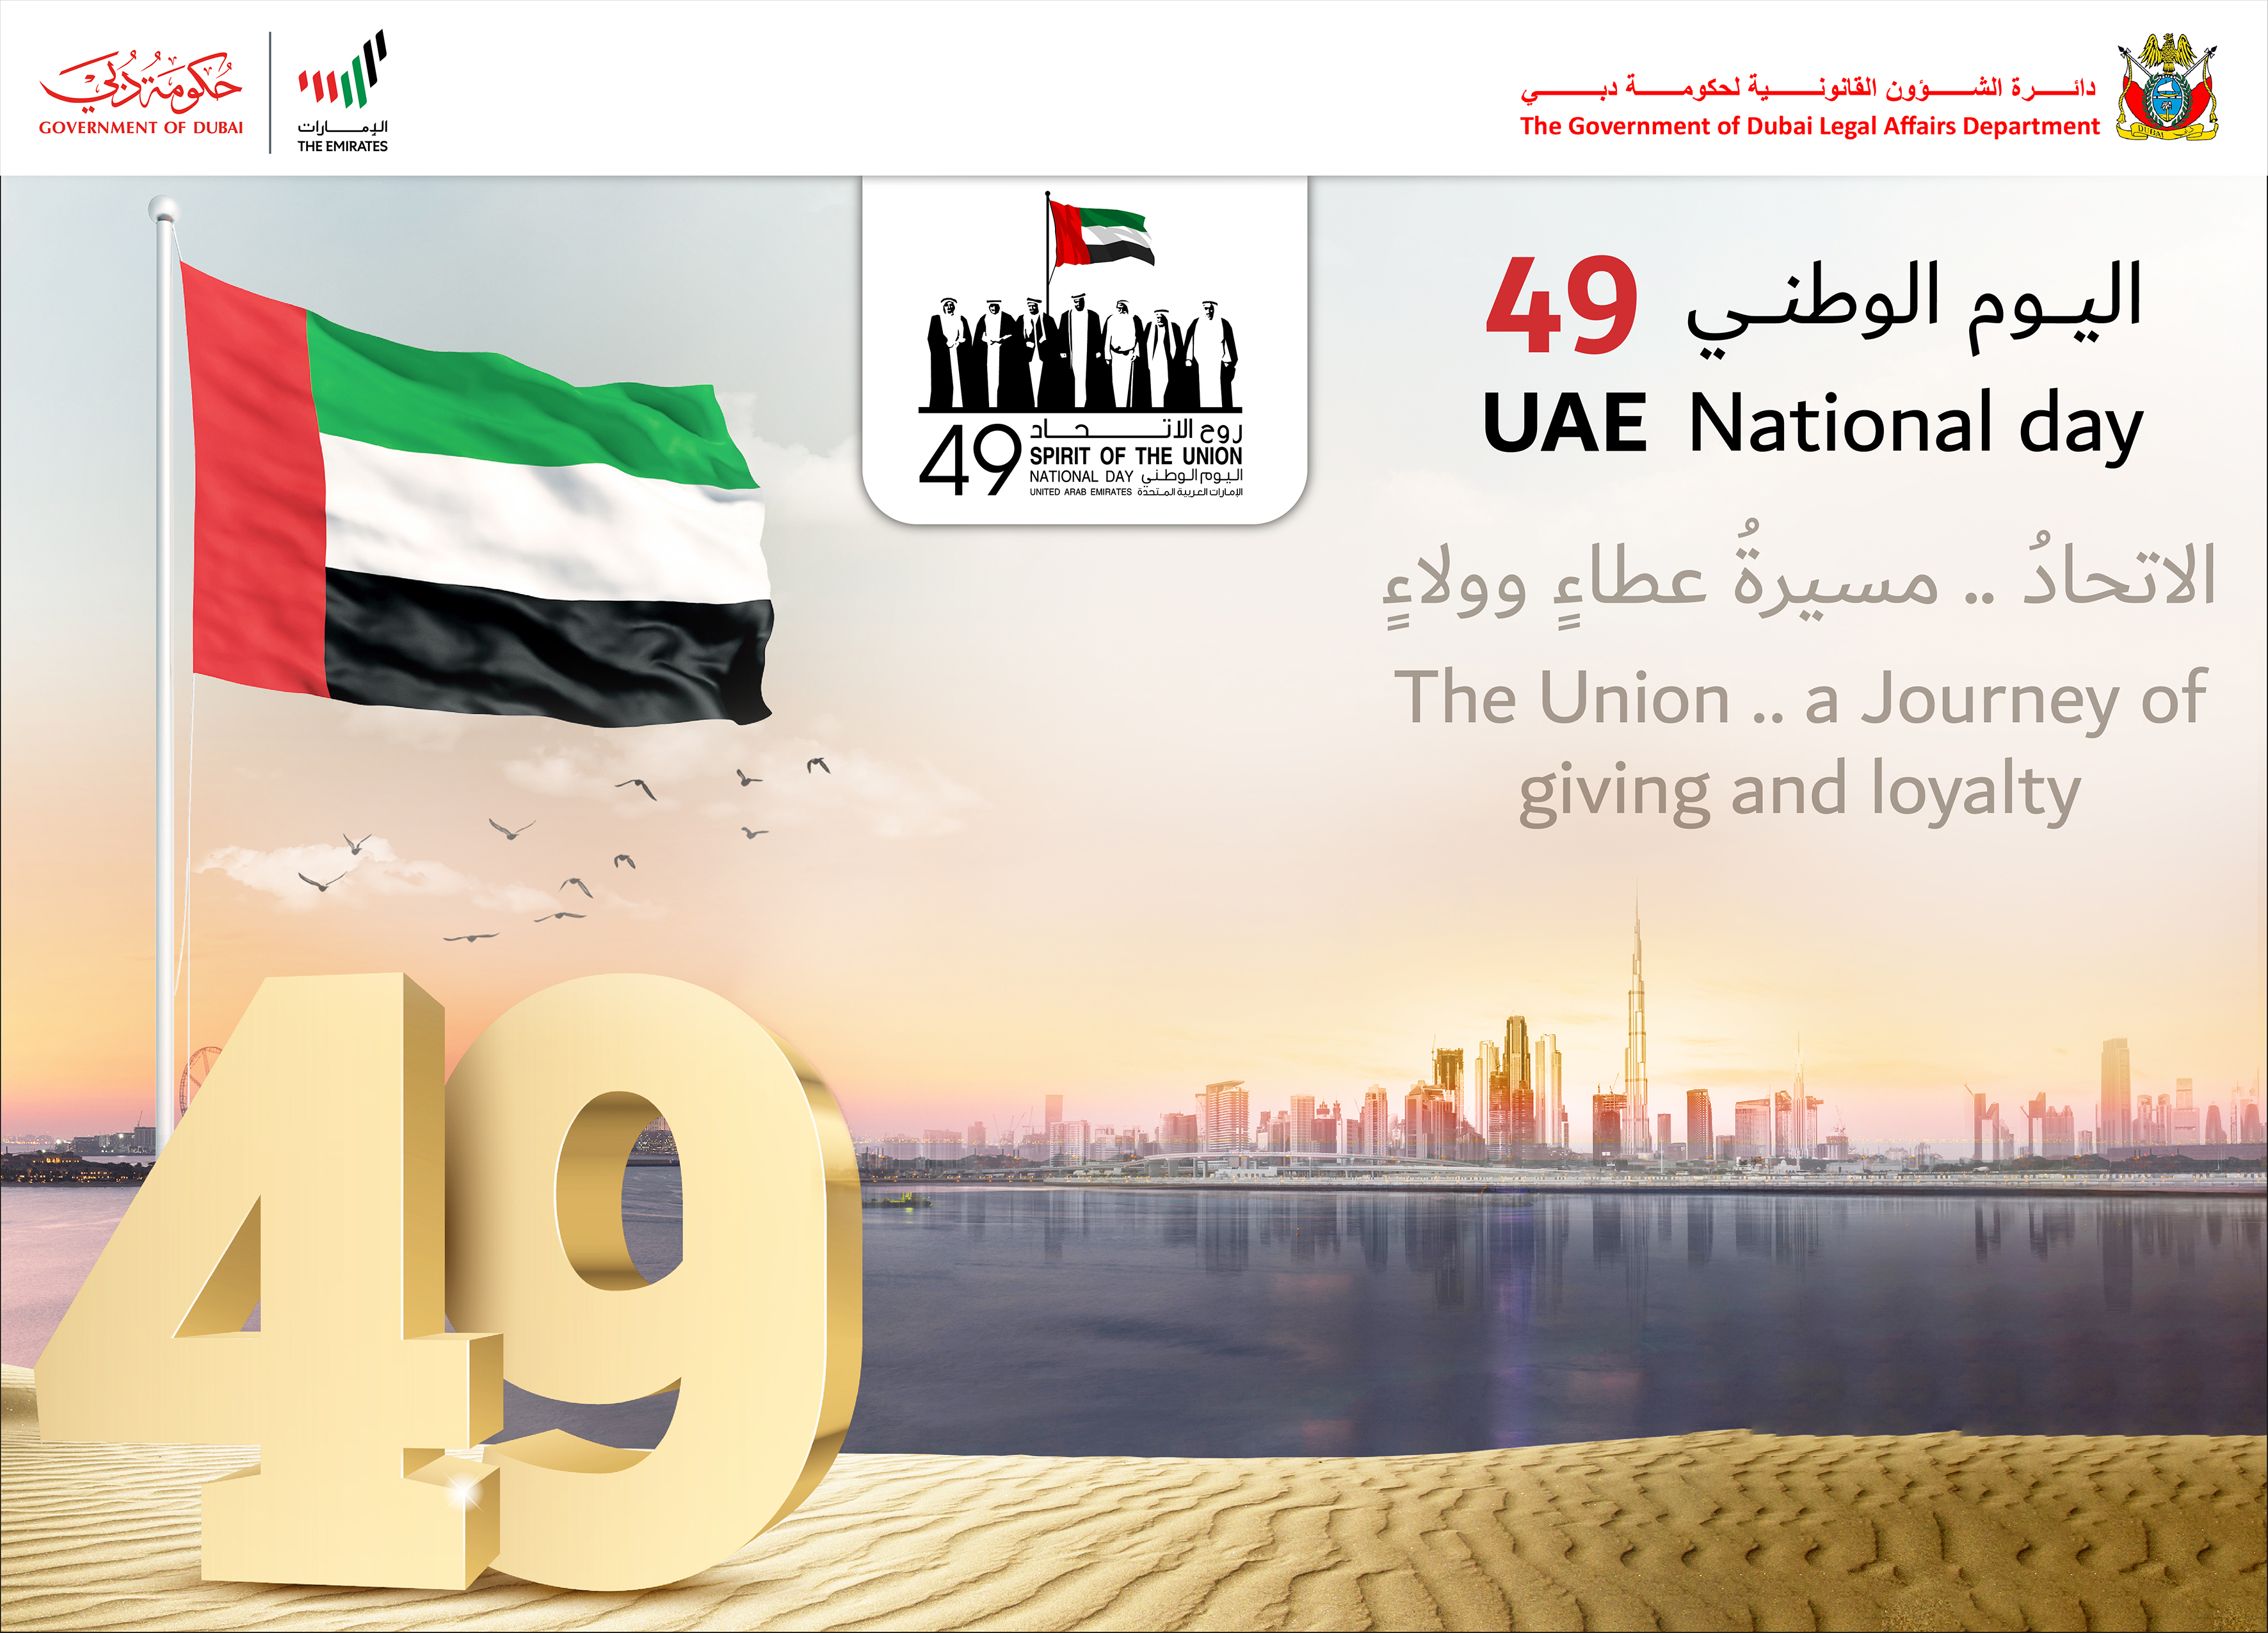 تصريح سعادة مدير عام دائرة الشؤون القانونية لحكومة دبي بمناسبة اليوم الوطني التاسع والأربعين لدولة الإمارات